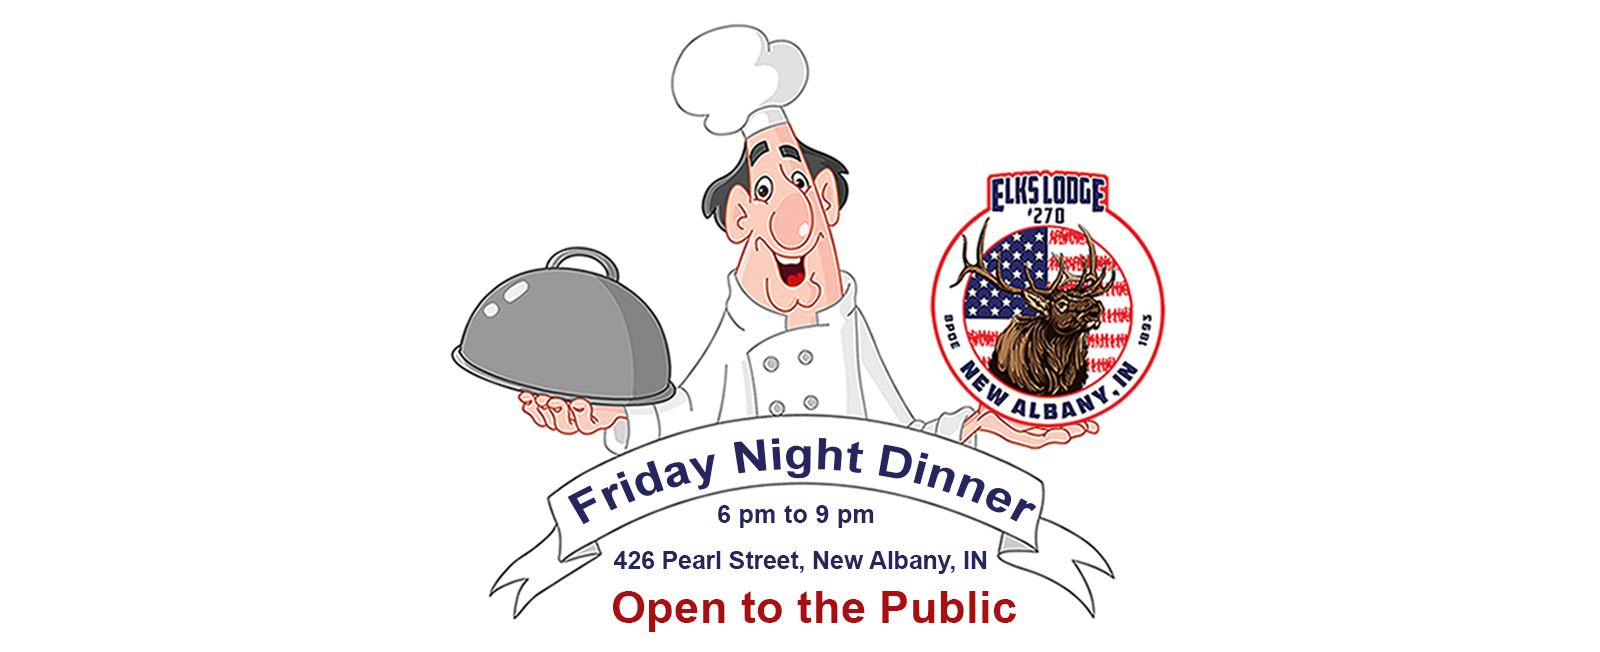 Friday Night Dinner at Elks Lodge 270